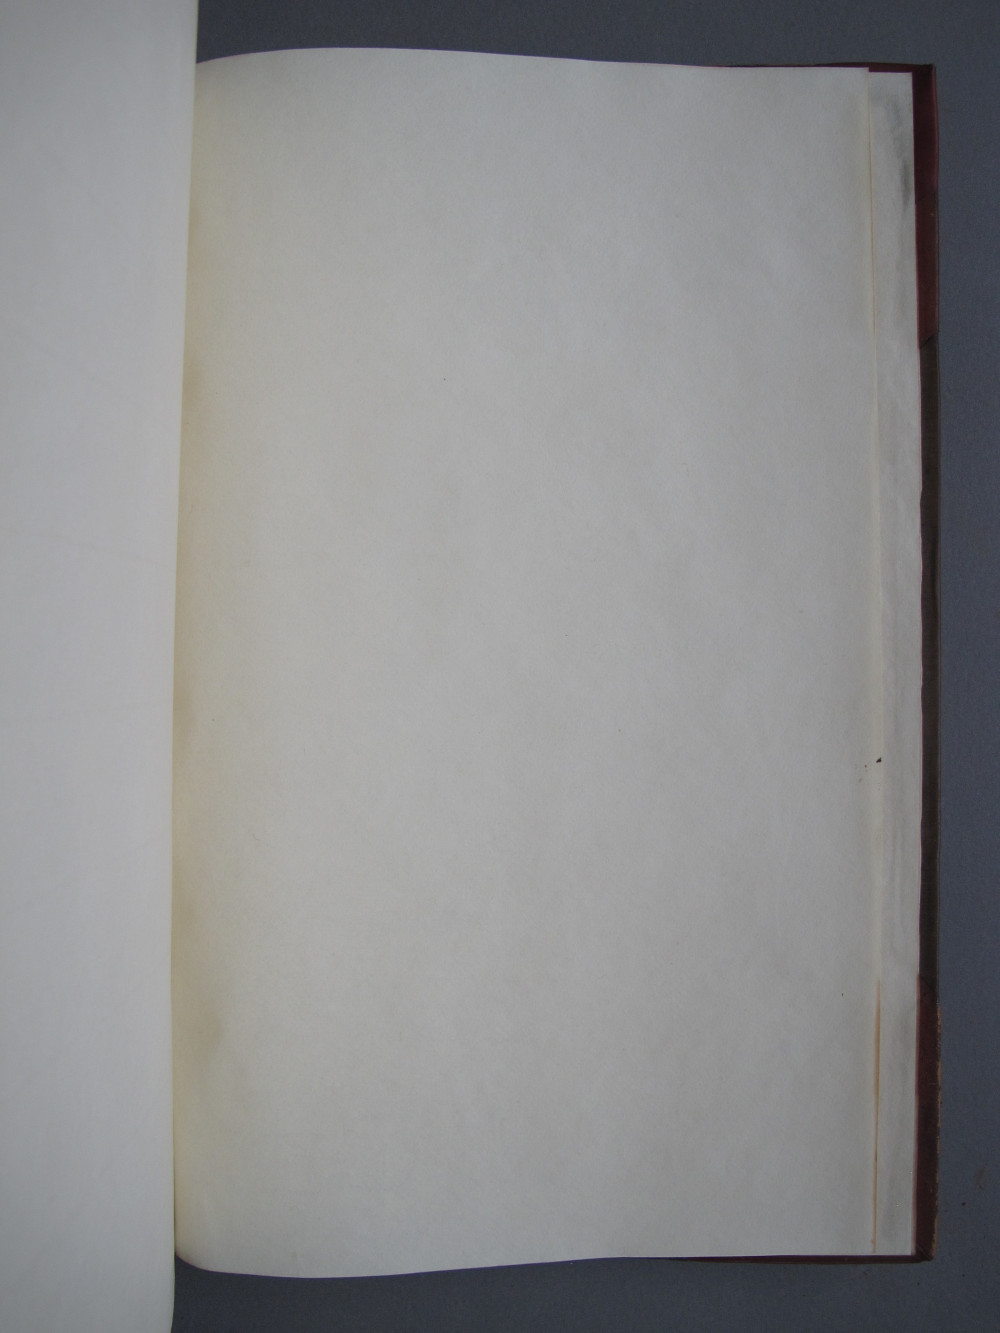 Folio 94 recto